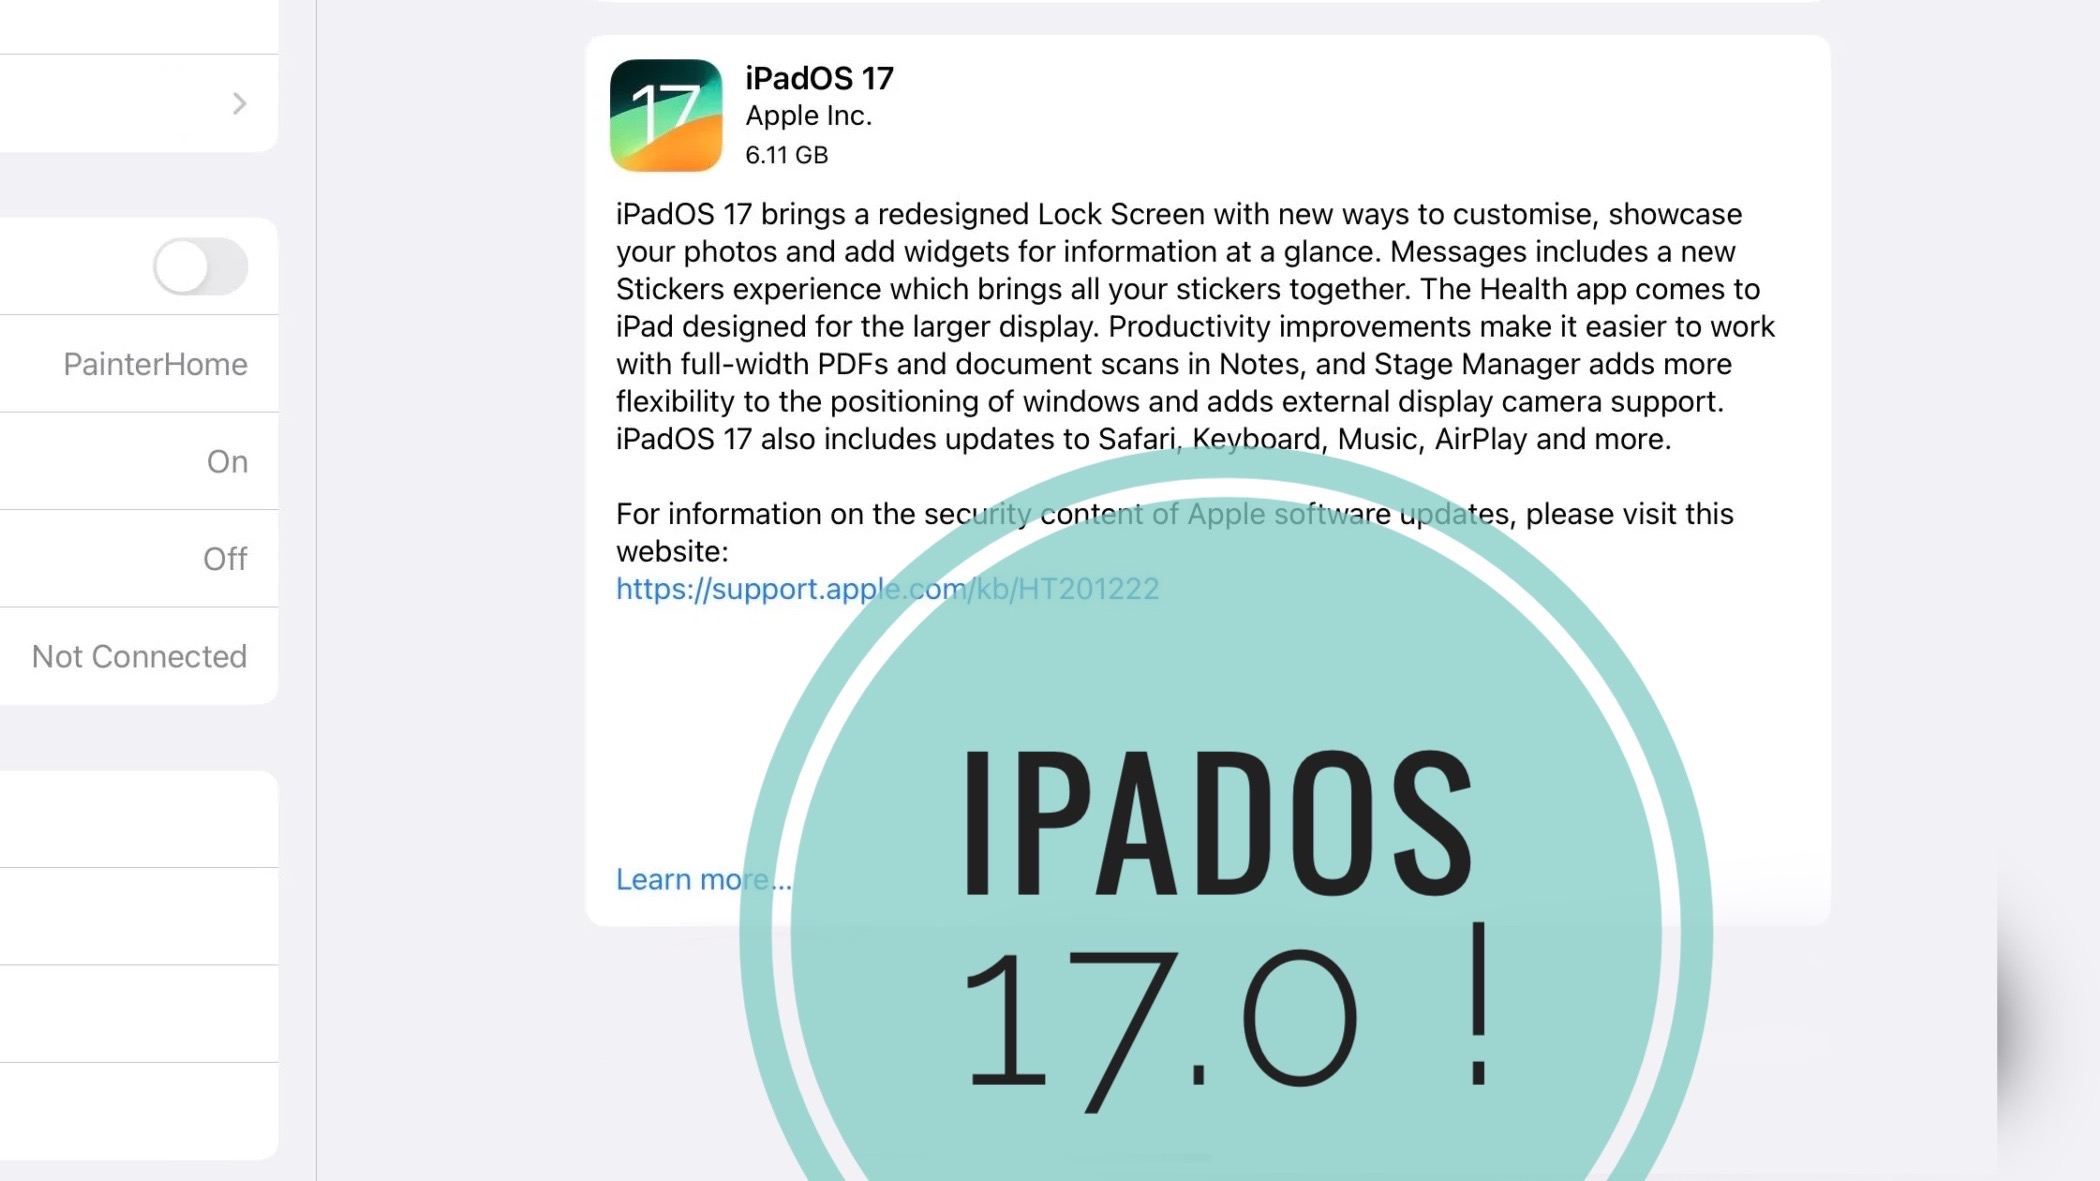 ipadOS 17 update